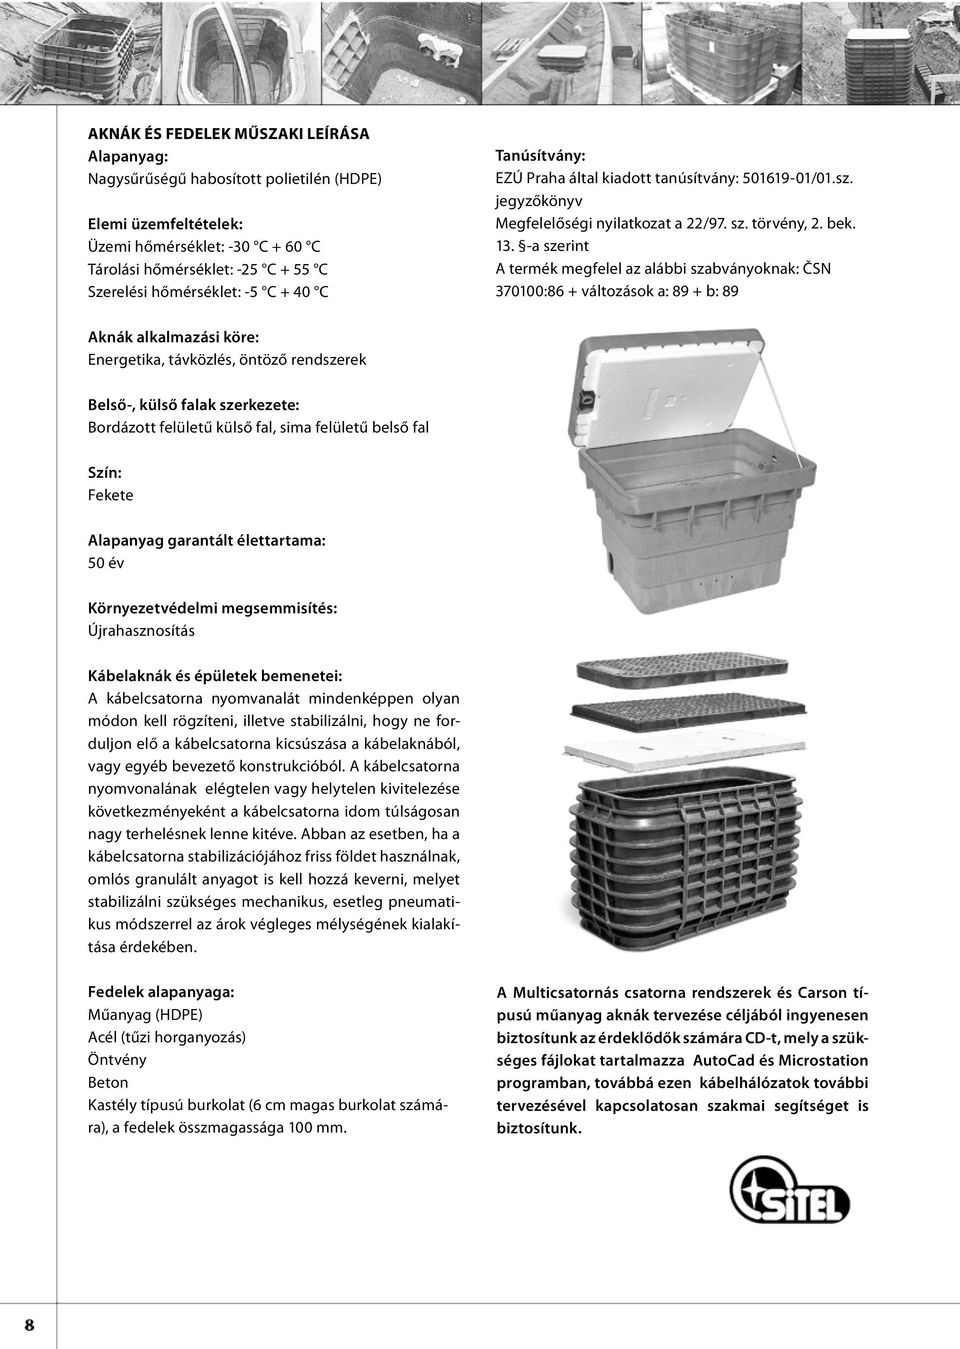 -a szerint A termék megfelel az alábbi szabványoknak: ČSN 370100:86 + változások a: 89 + b: 89 Aknák alkalmazási köre: Energetika, távközlés, öntöző rendszerek Belső-, külső falak szerkezete: